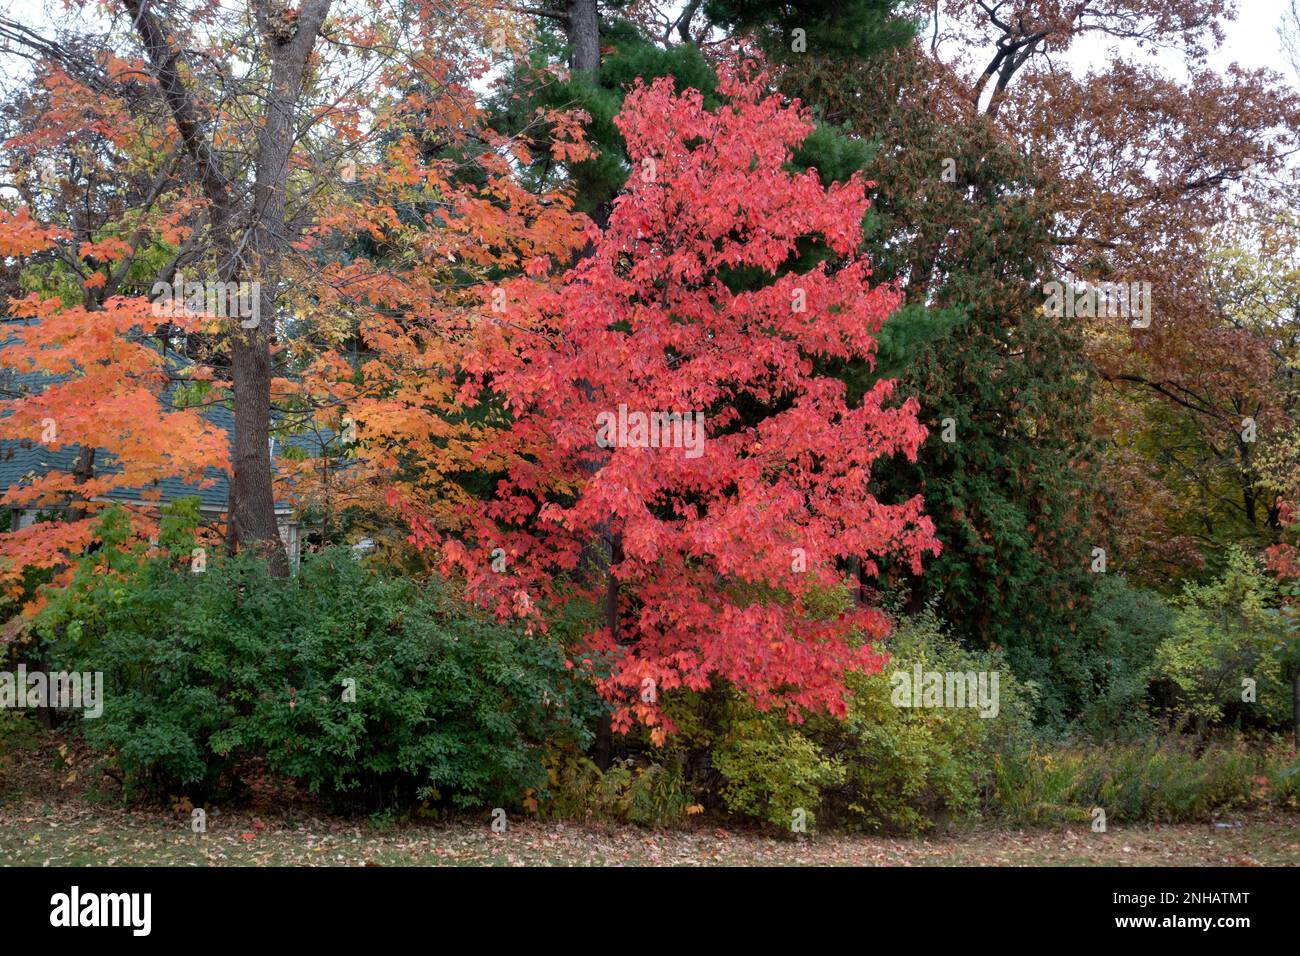 Árboles que capturan los hermosos colores rojos y anaranjados vivos del otoño. St Paul Minnesota MN EE.UU Foto de stock